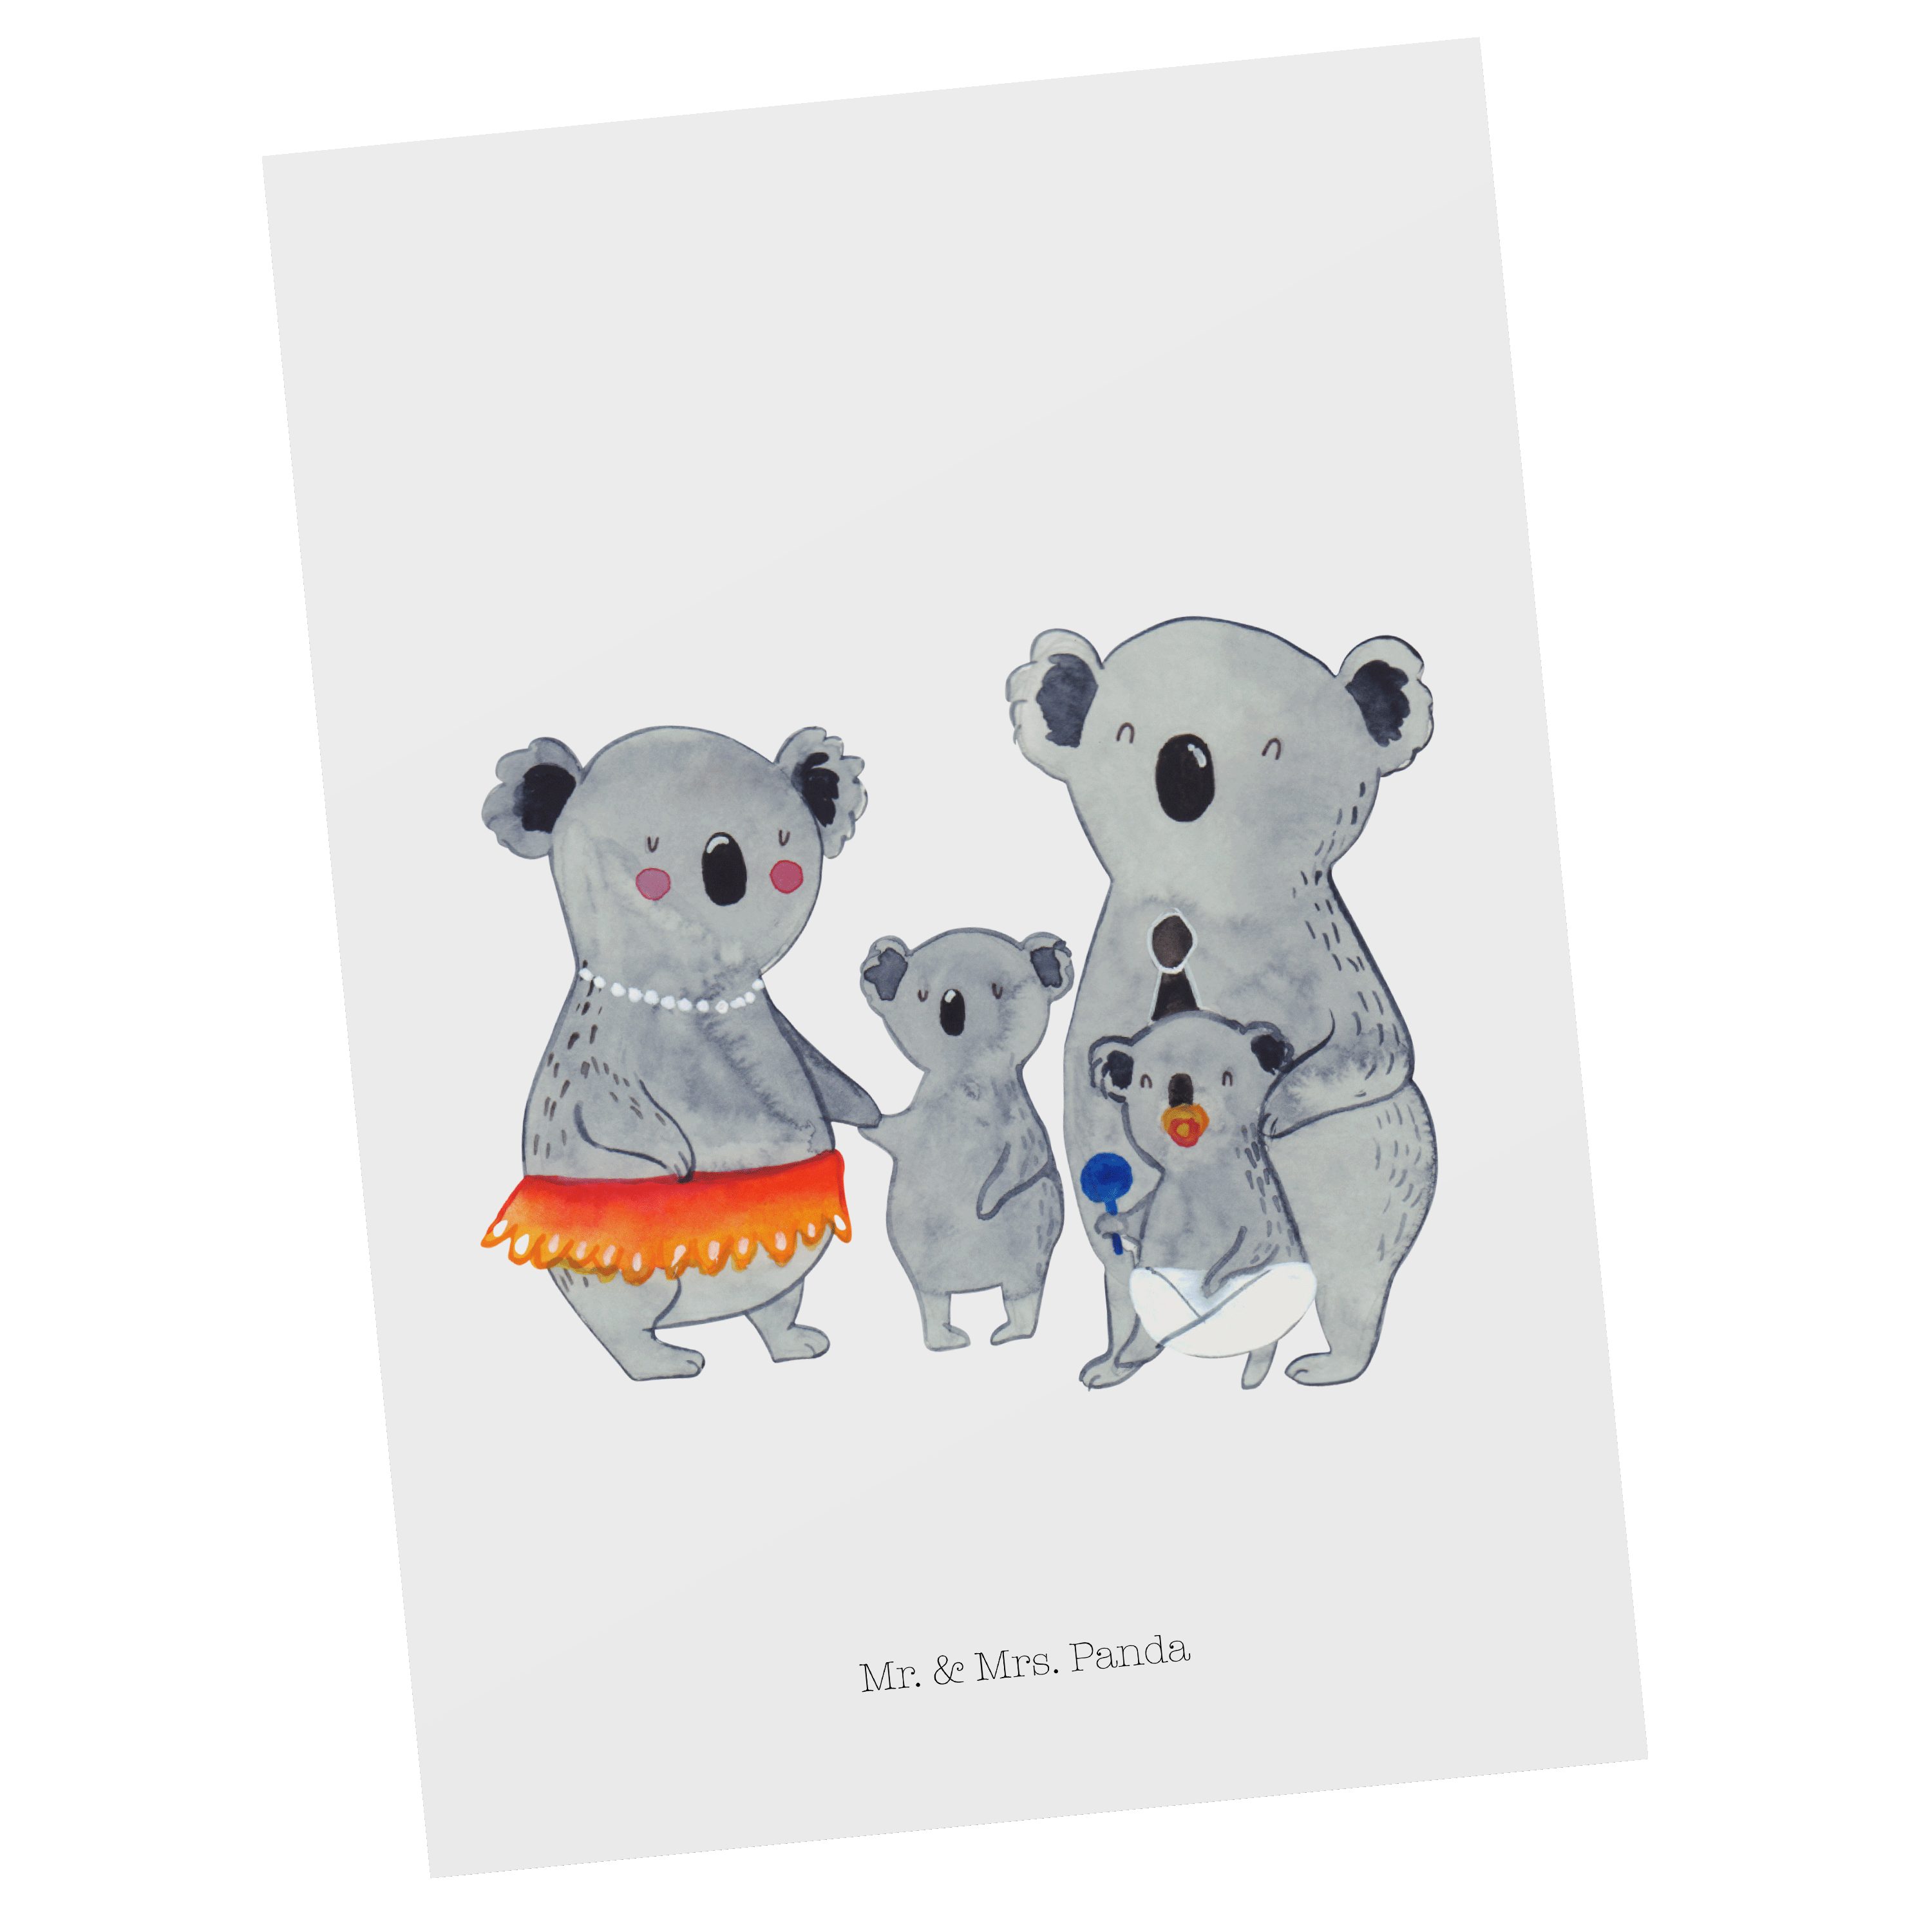 Mr. & Mrs. Panda Postkarte Koala Familie - Weiß - Geschenk, Papa, Koalas, Muttertag, Einladung